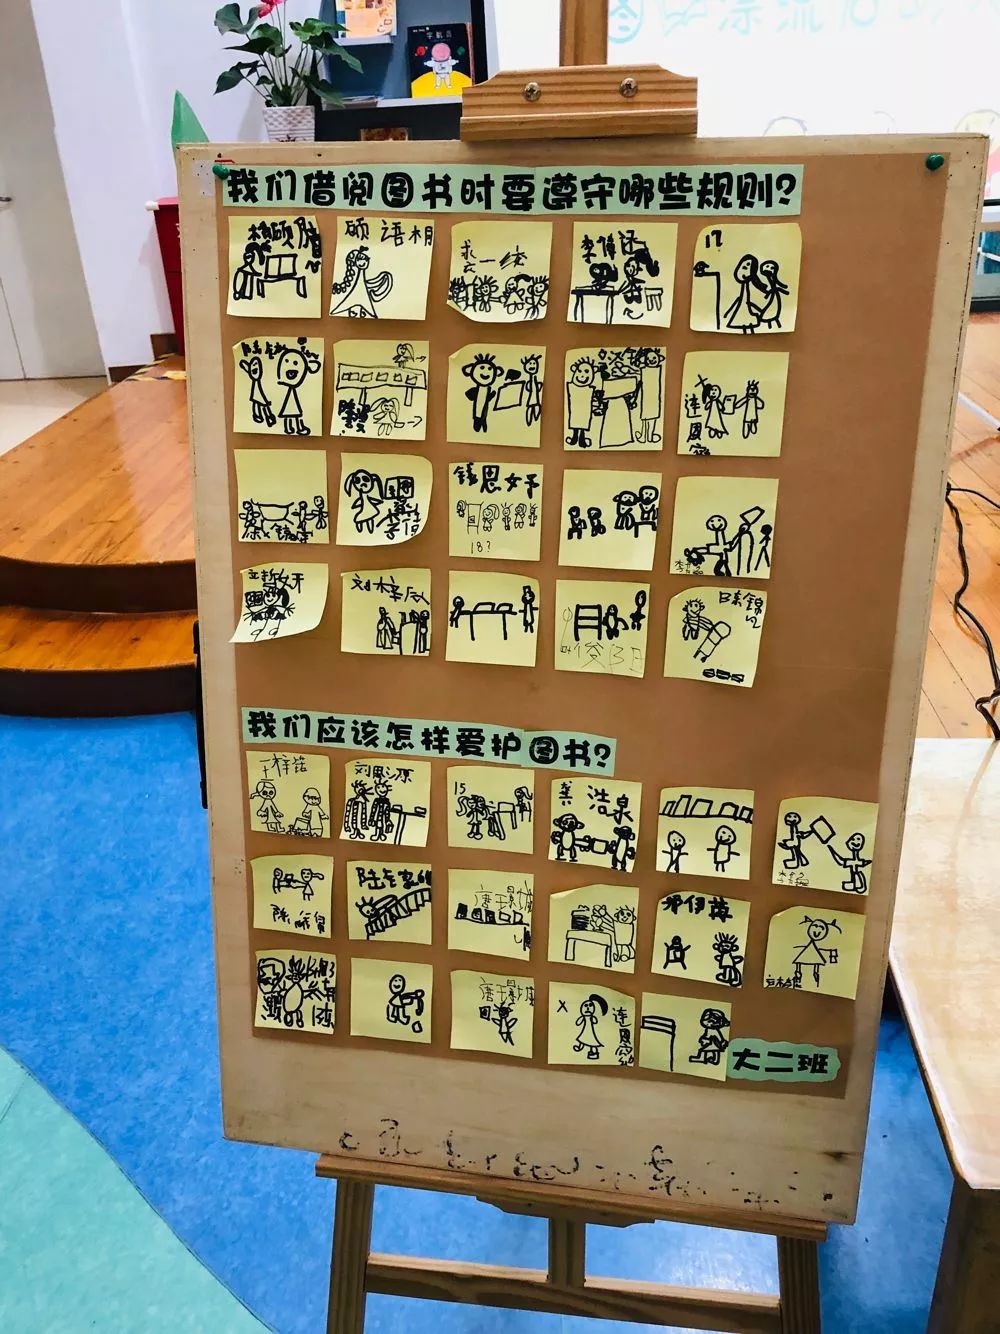 好书共阅书香满园记第一实验幼儿园新上海园区图书漂流活动